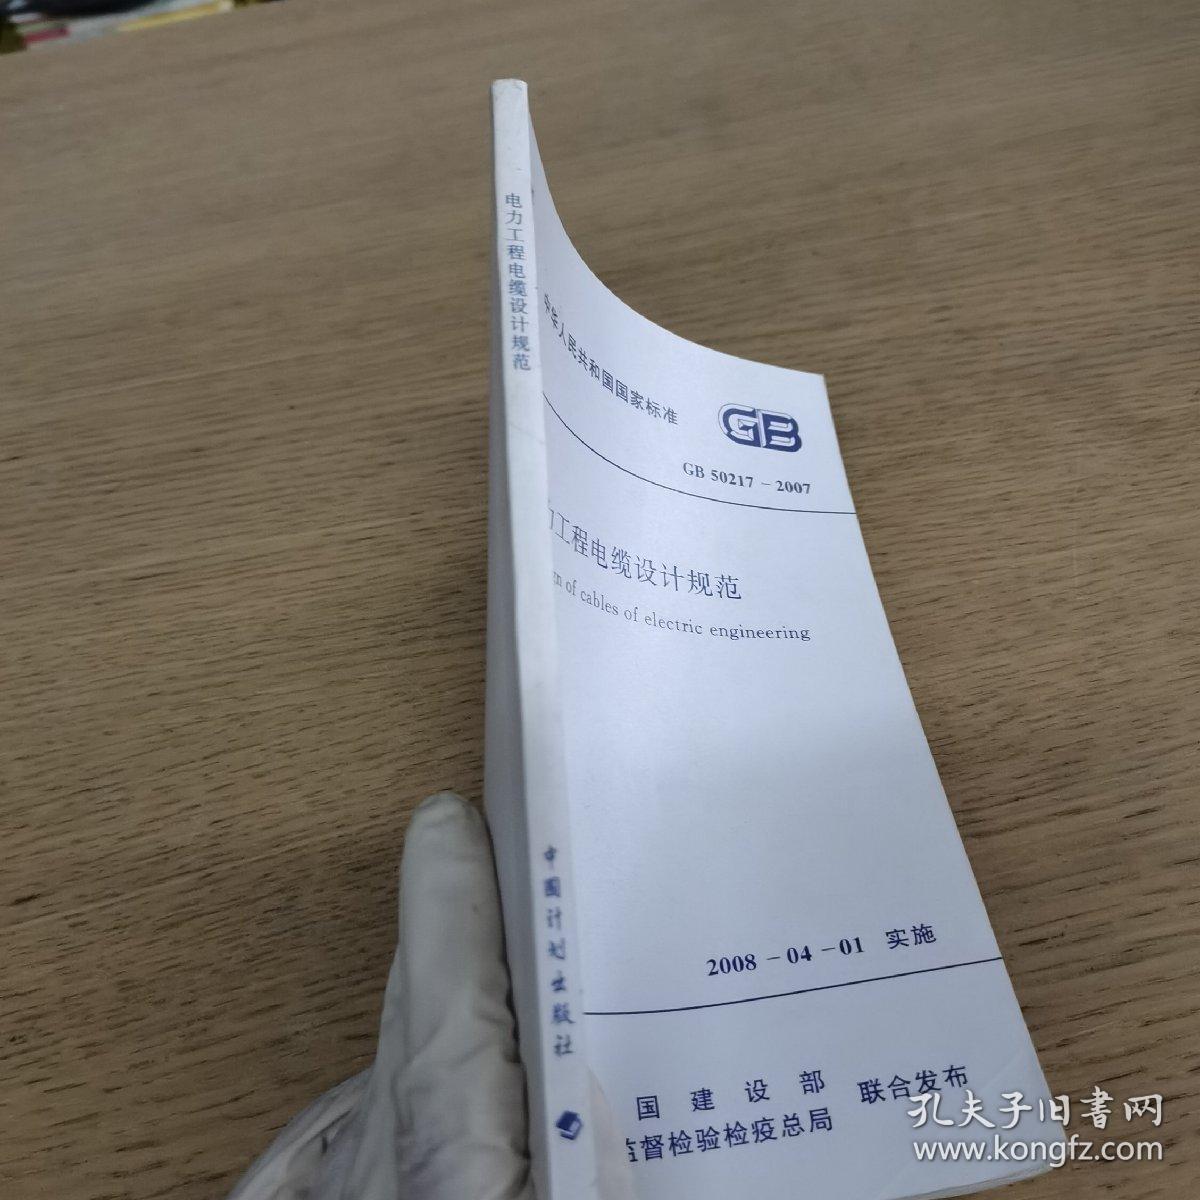 中华人民共和国国家标准  电力工程电缆设计规范